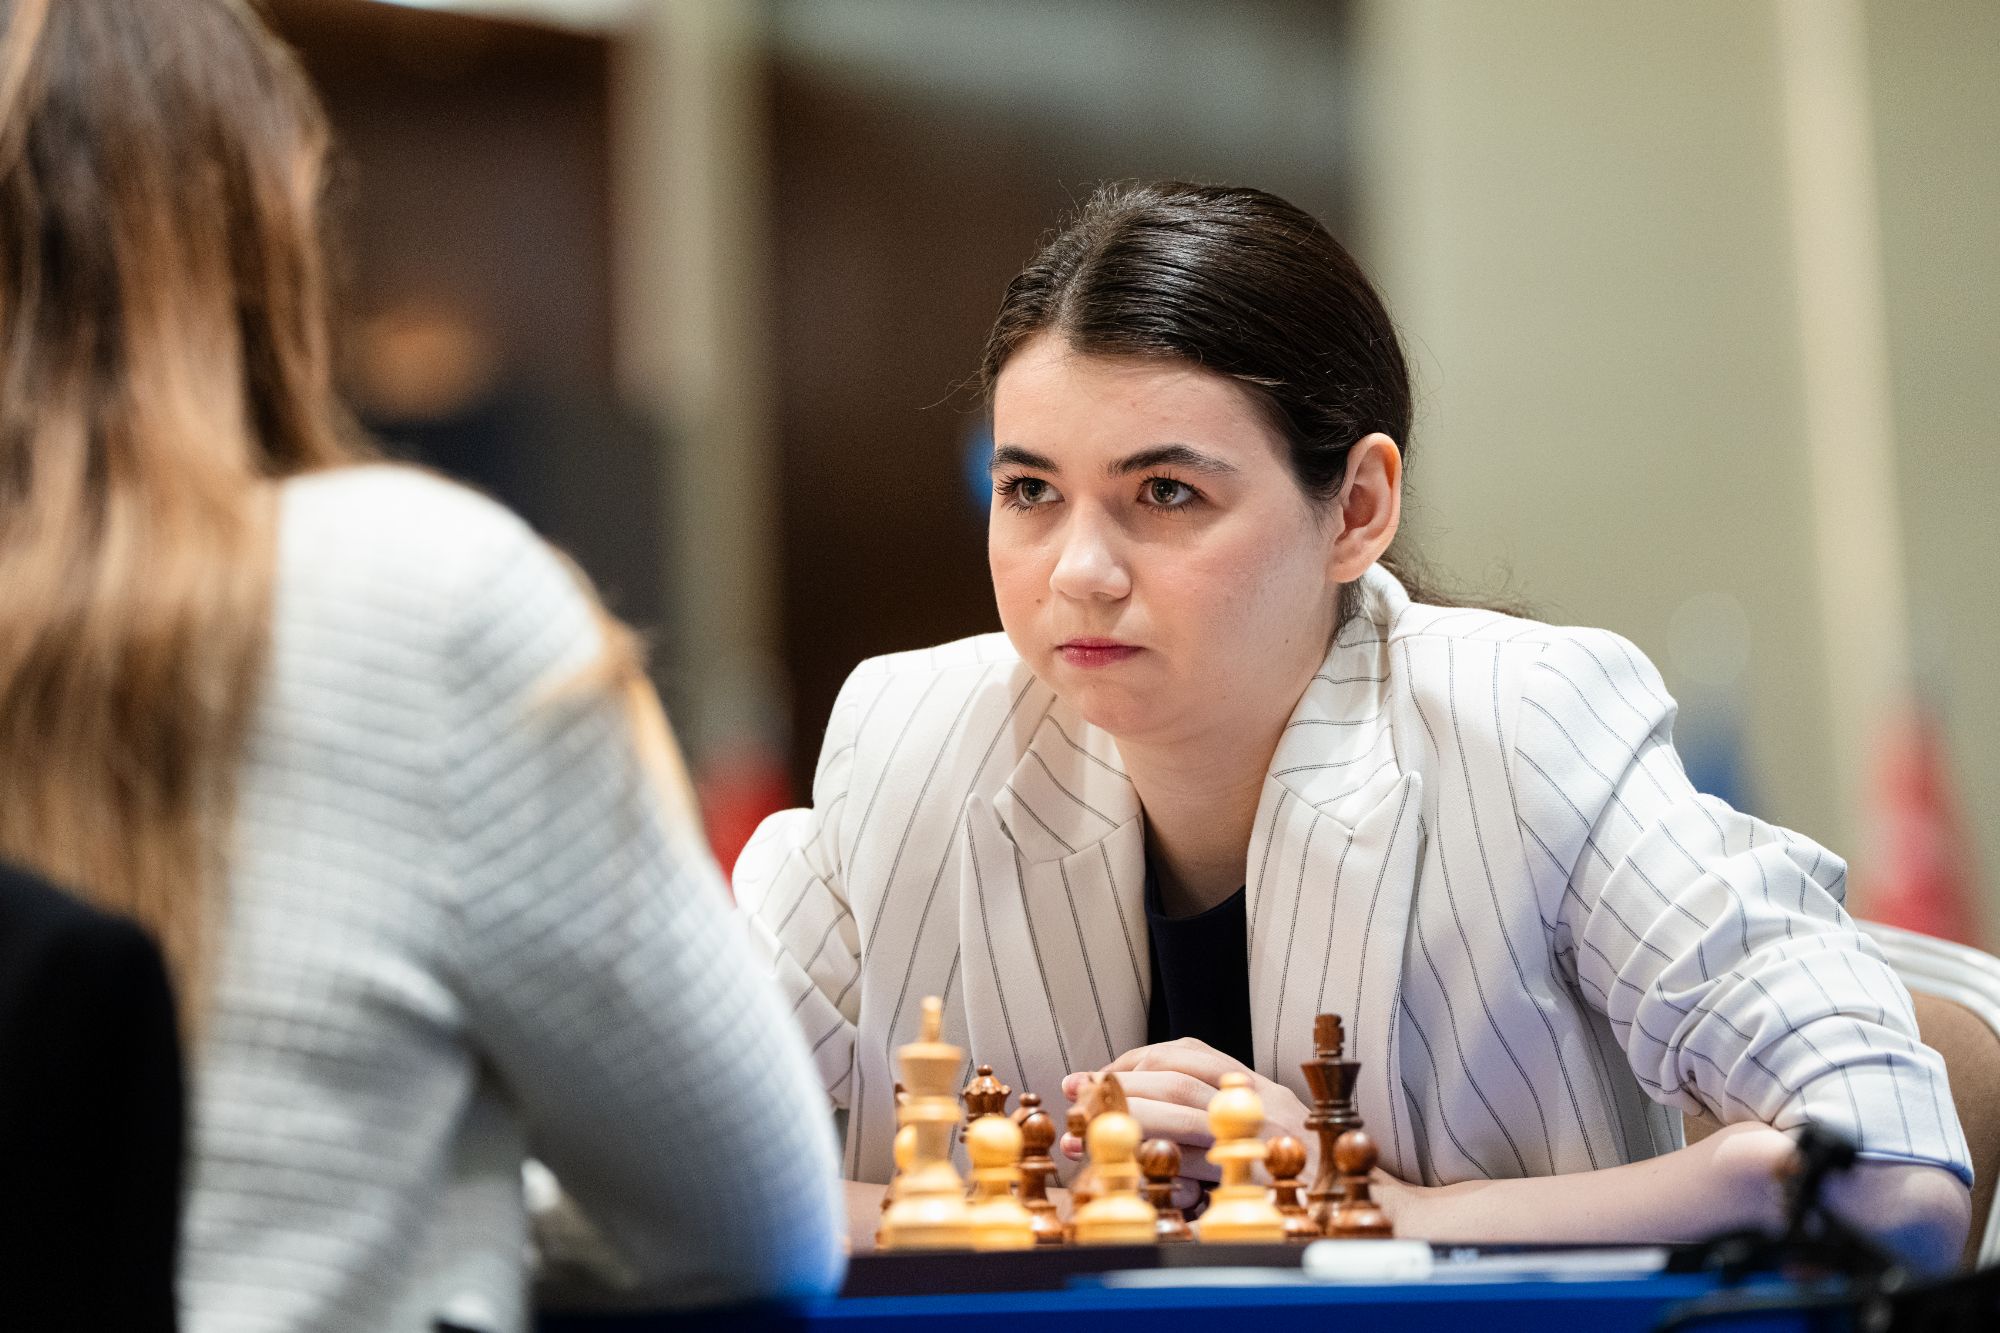 FIDE World Chess Cup (Open Semifinals, Women's Final): A Pragg-Carlsen  Final; Goryachkina Wins Women's Title 